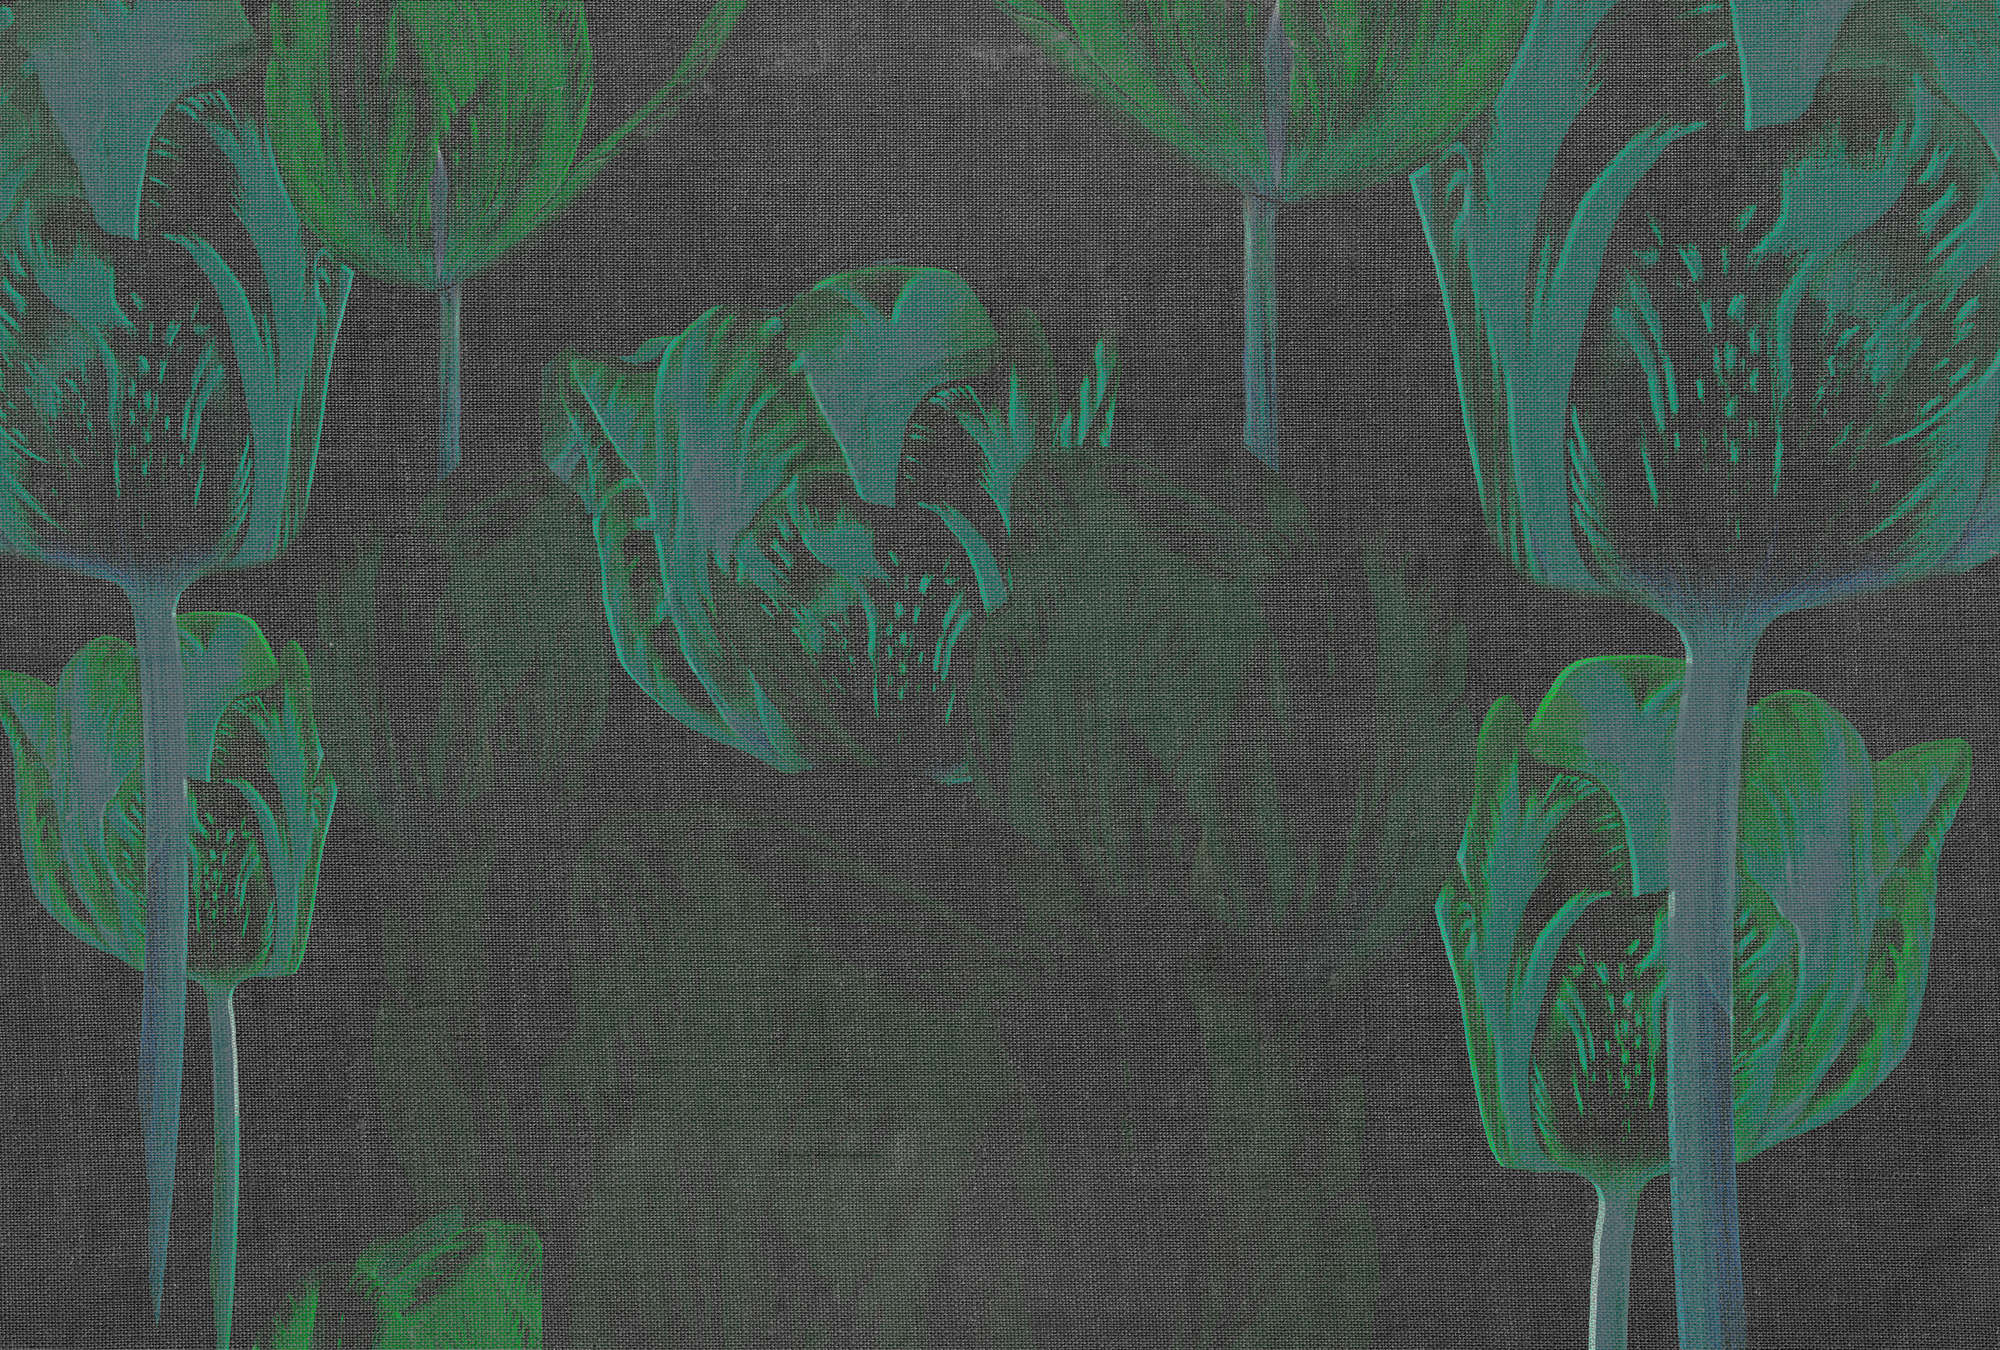             Donker fotobehang tulpen, bloemen in opvallende kleuren - groen, zwart, grijs
        